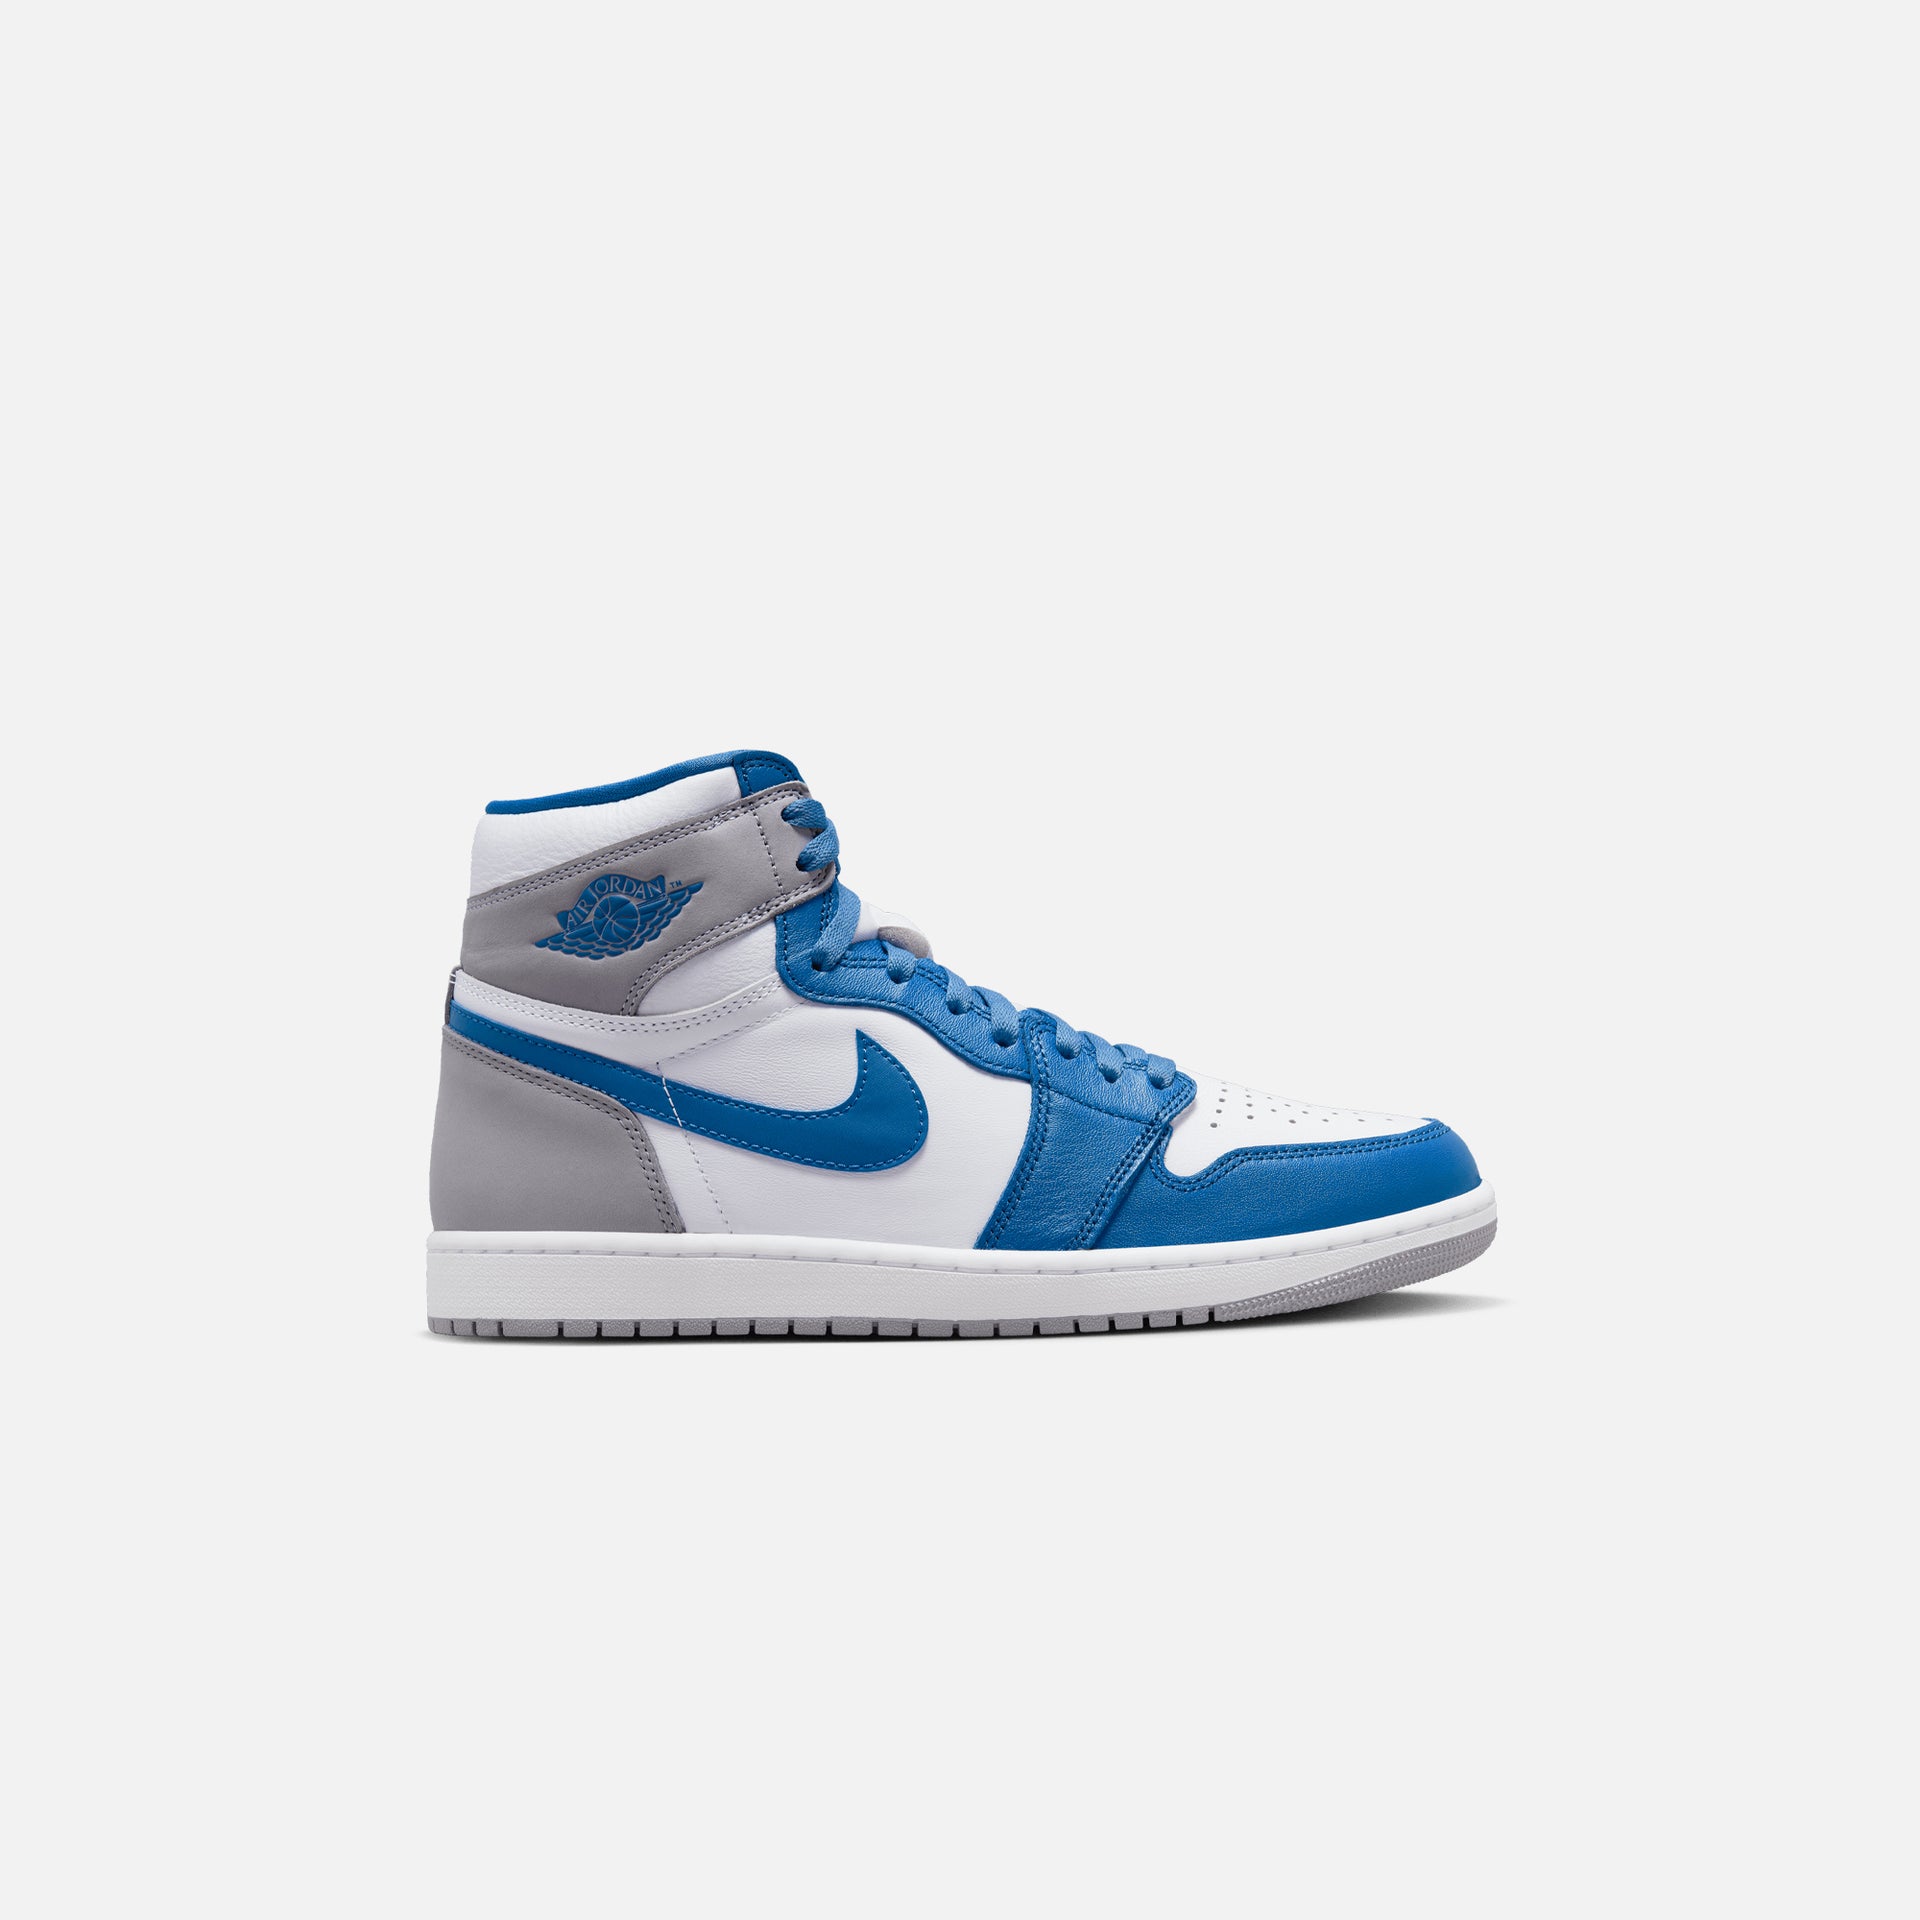 Nike Jordan 1 Retro High OG -  True Blue / White / Cement Grey